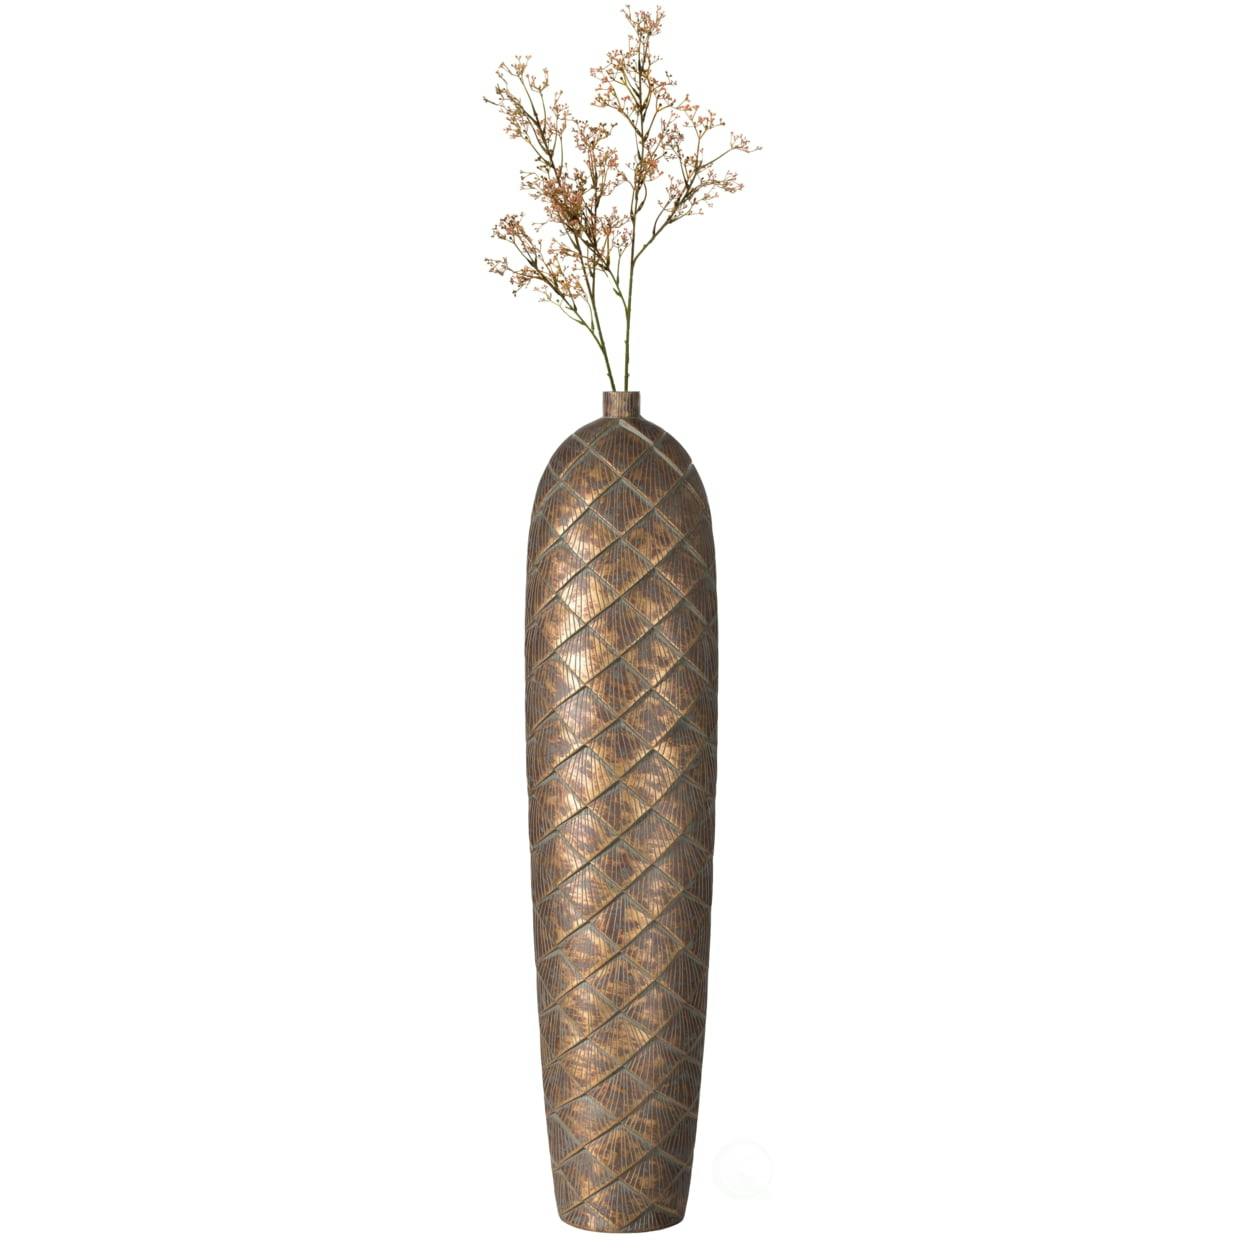 Elegant Antique Ceramic 37" Floor Vase with Vintage Charm